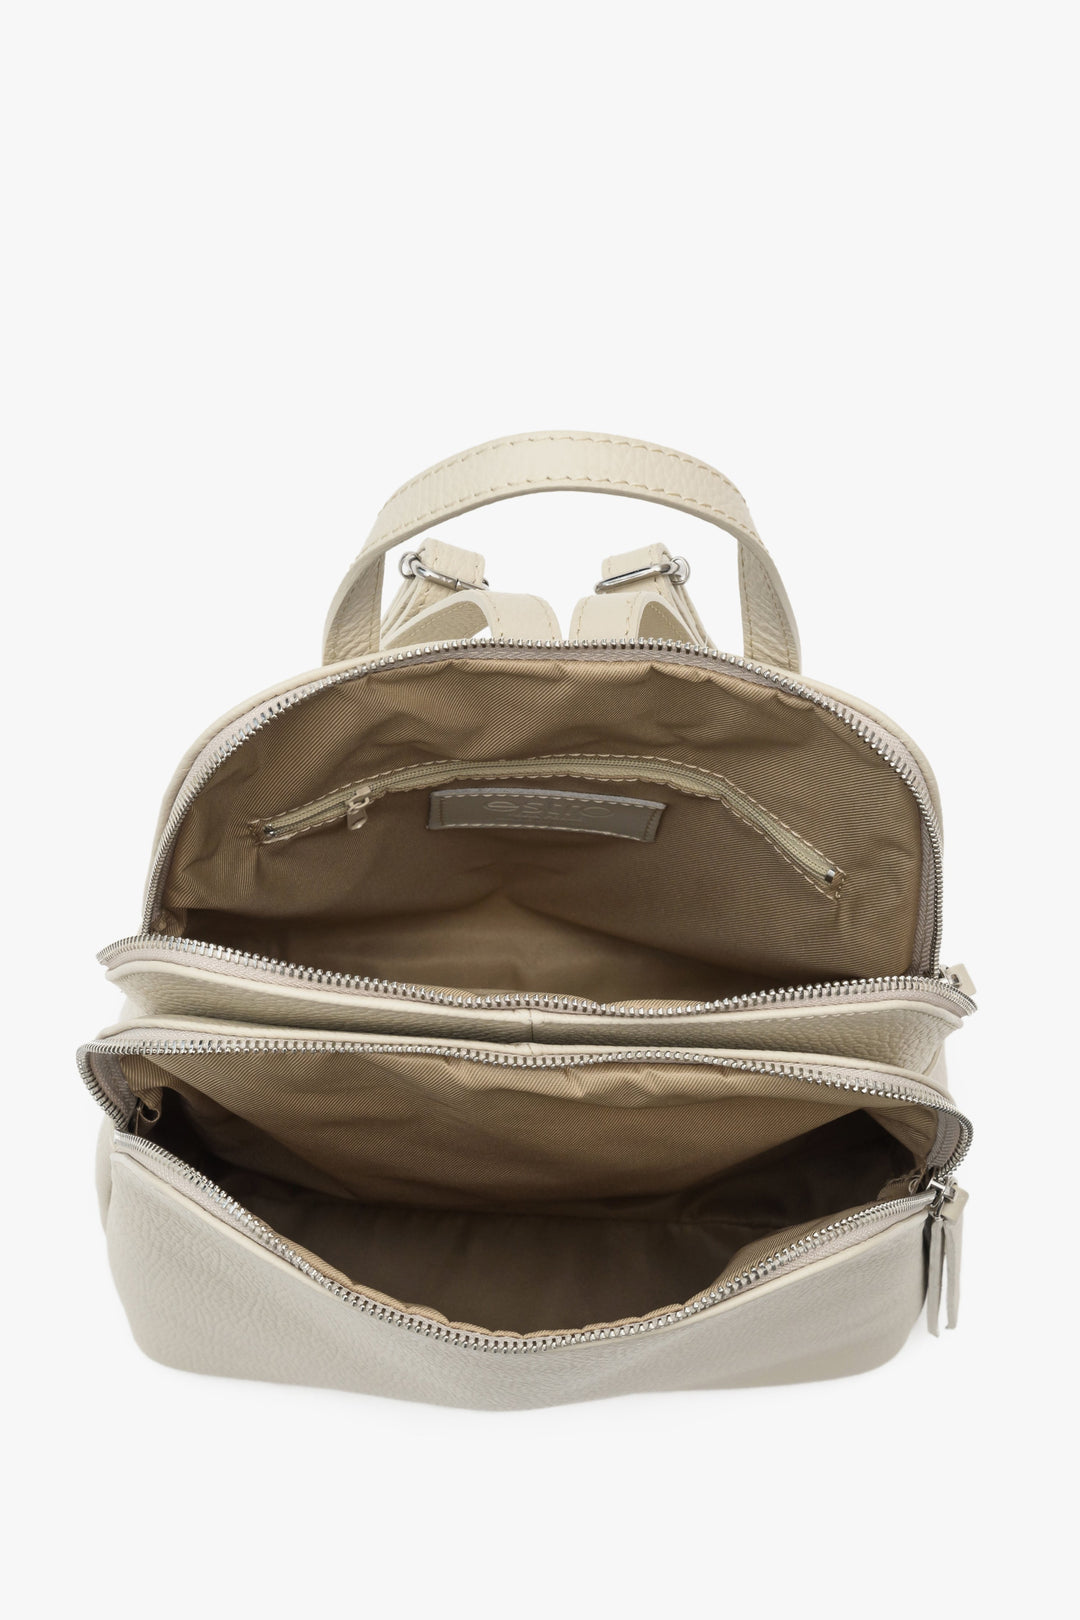 Pojemny, skórzany plecak damski Estro w kolorze jasnobeżowym - zbliżenie na wnętrze modelu.